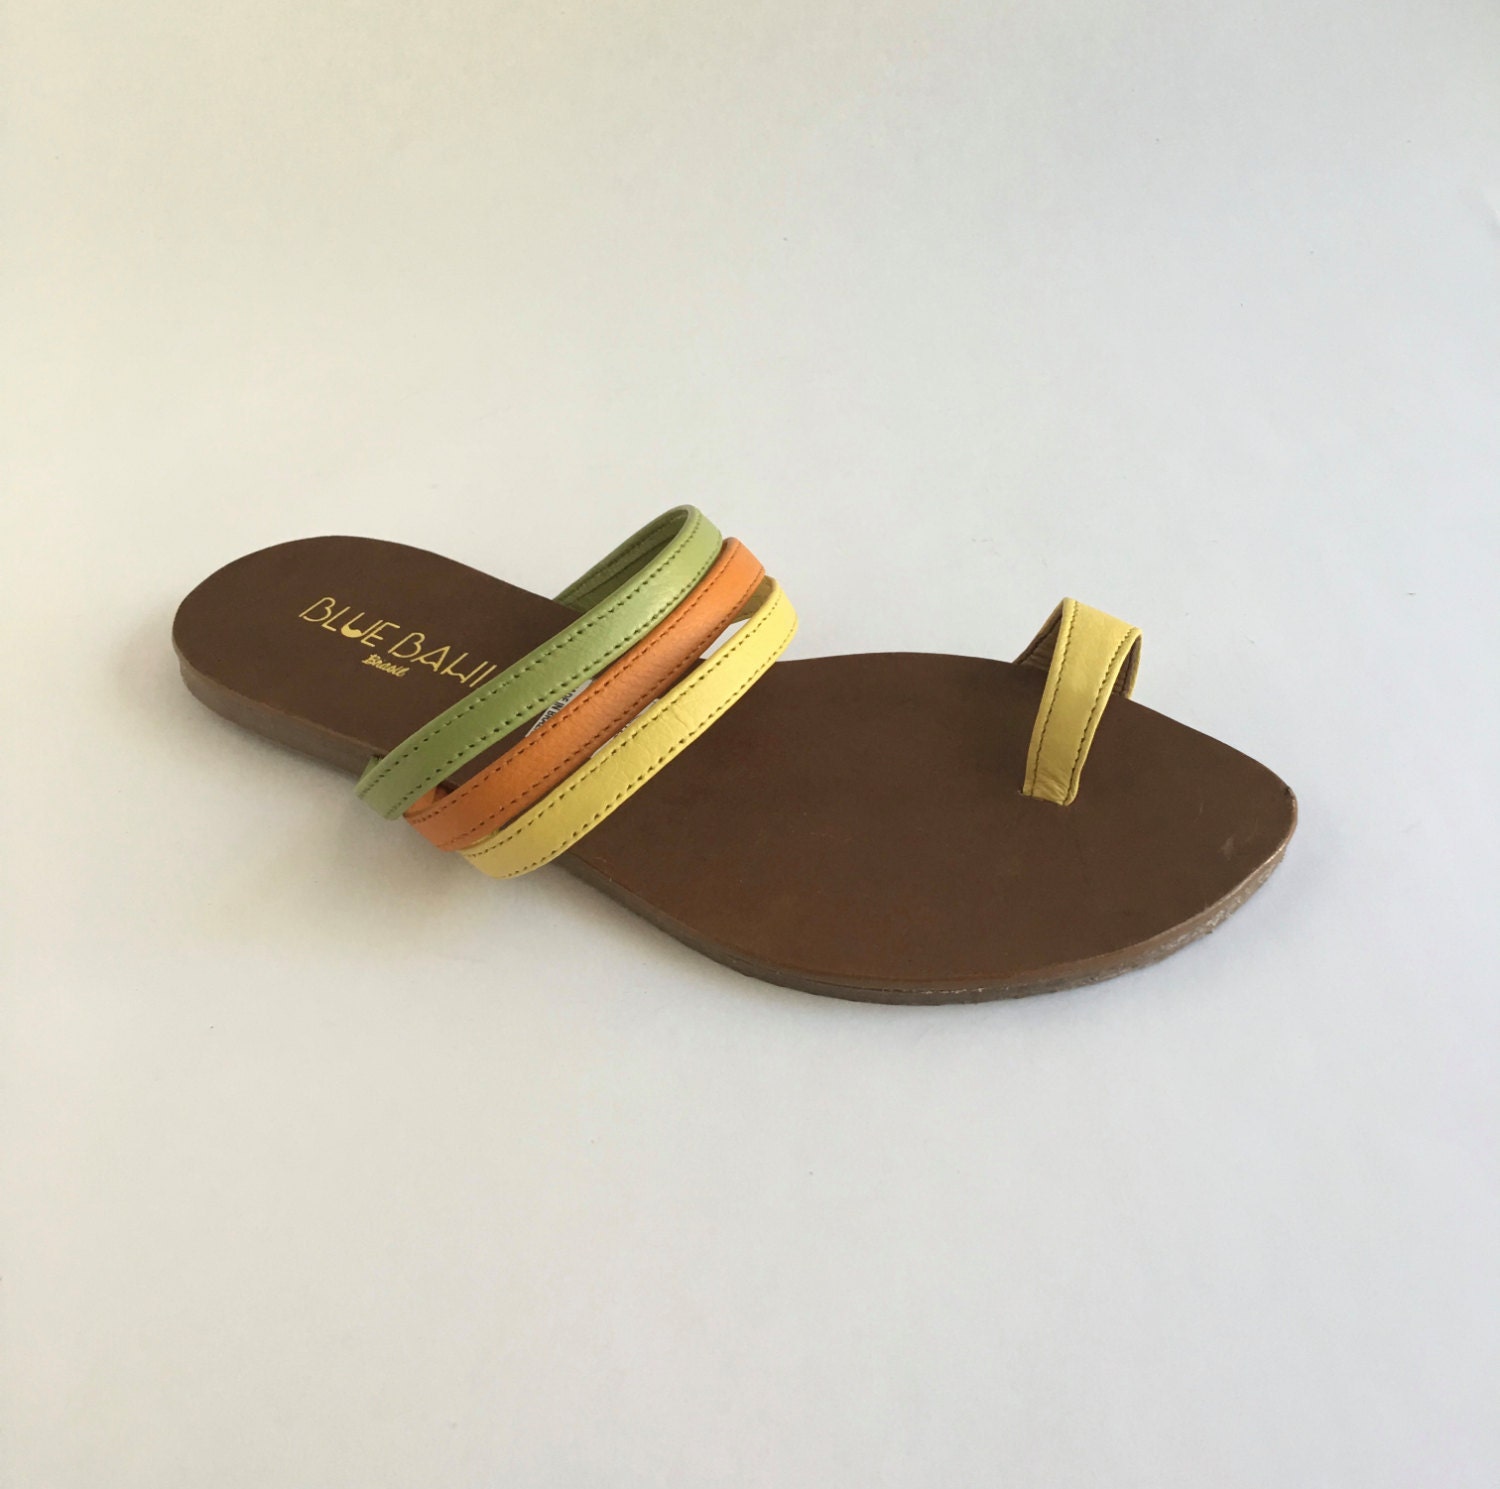 Brazilian Leather Slide On Sandals for Women in Green Orange | Etsy